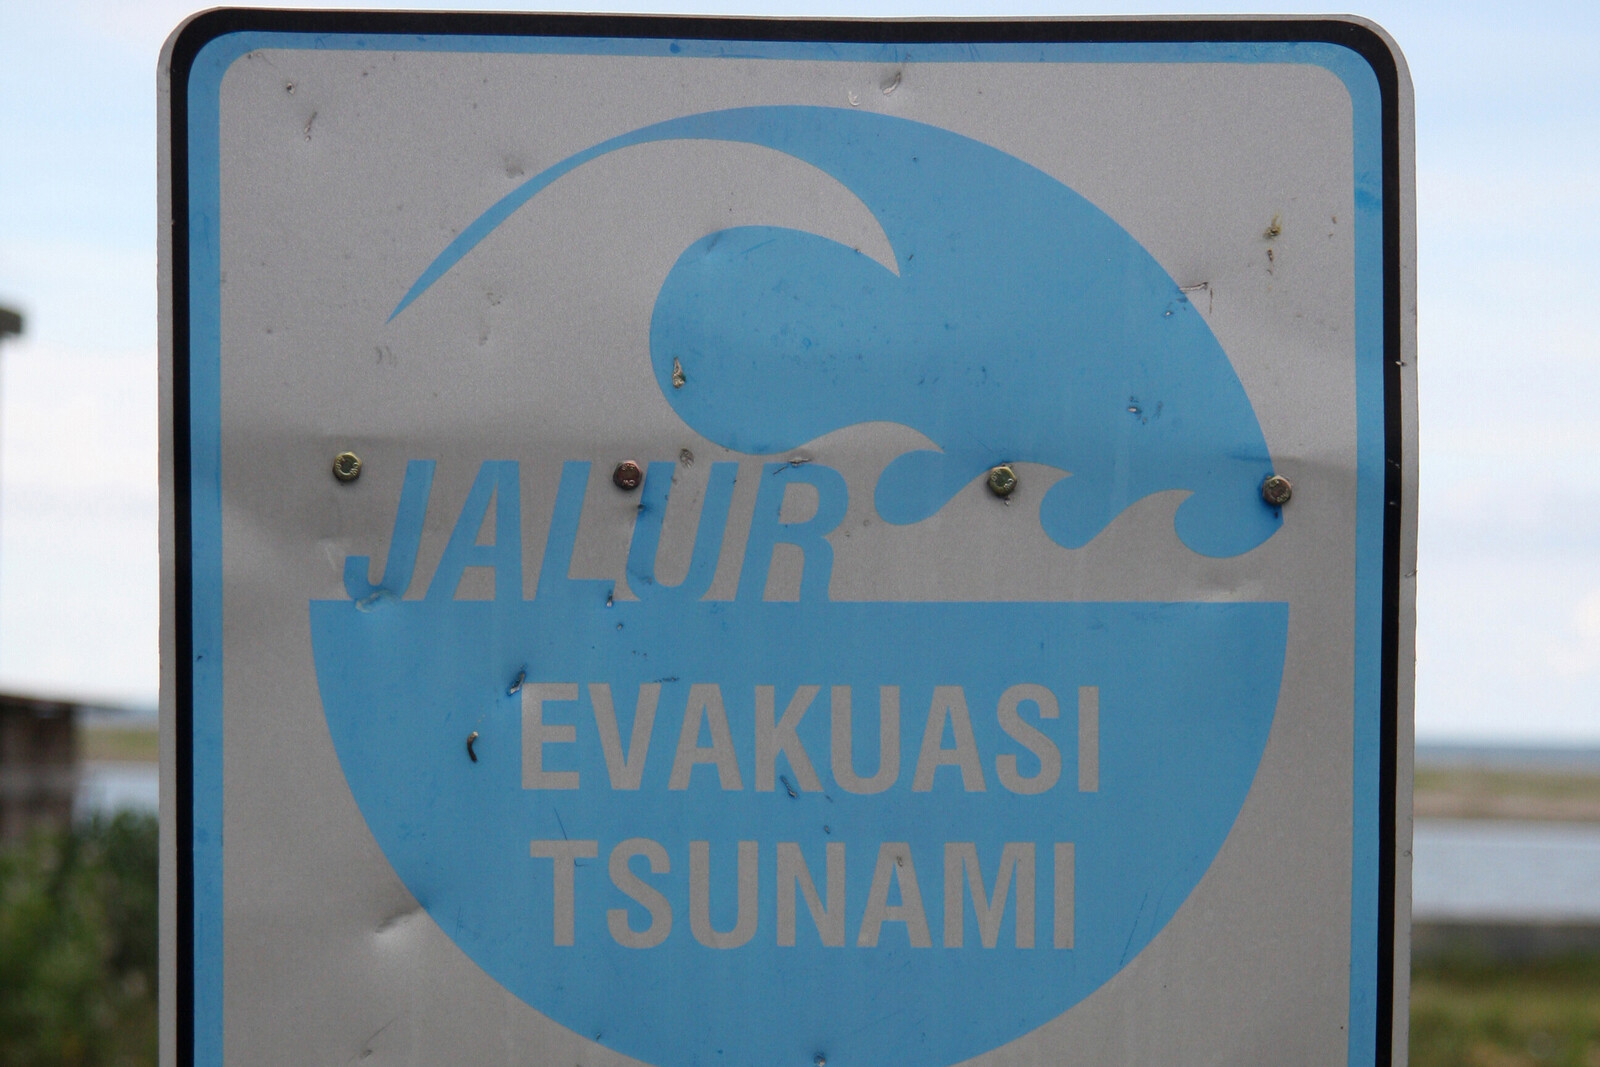 Oft bleiben nur wenige Minuten, um sich vor einem Tsumani in Sicherheit zu bringen. Schilder weisen den schnellsten Fluchtweg hin.